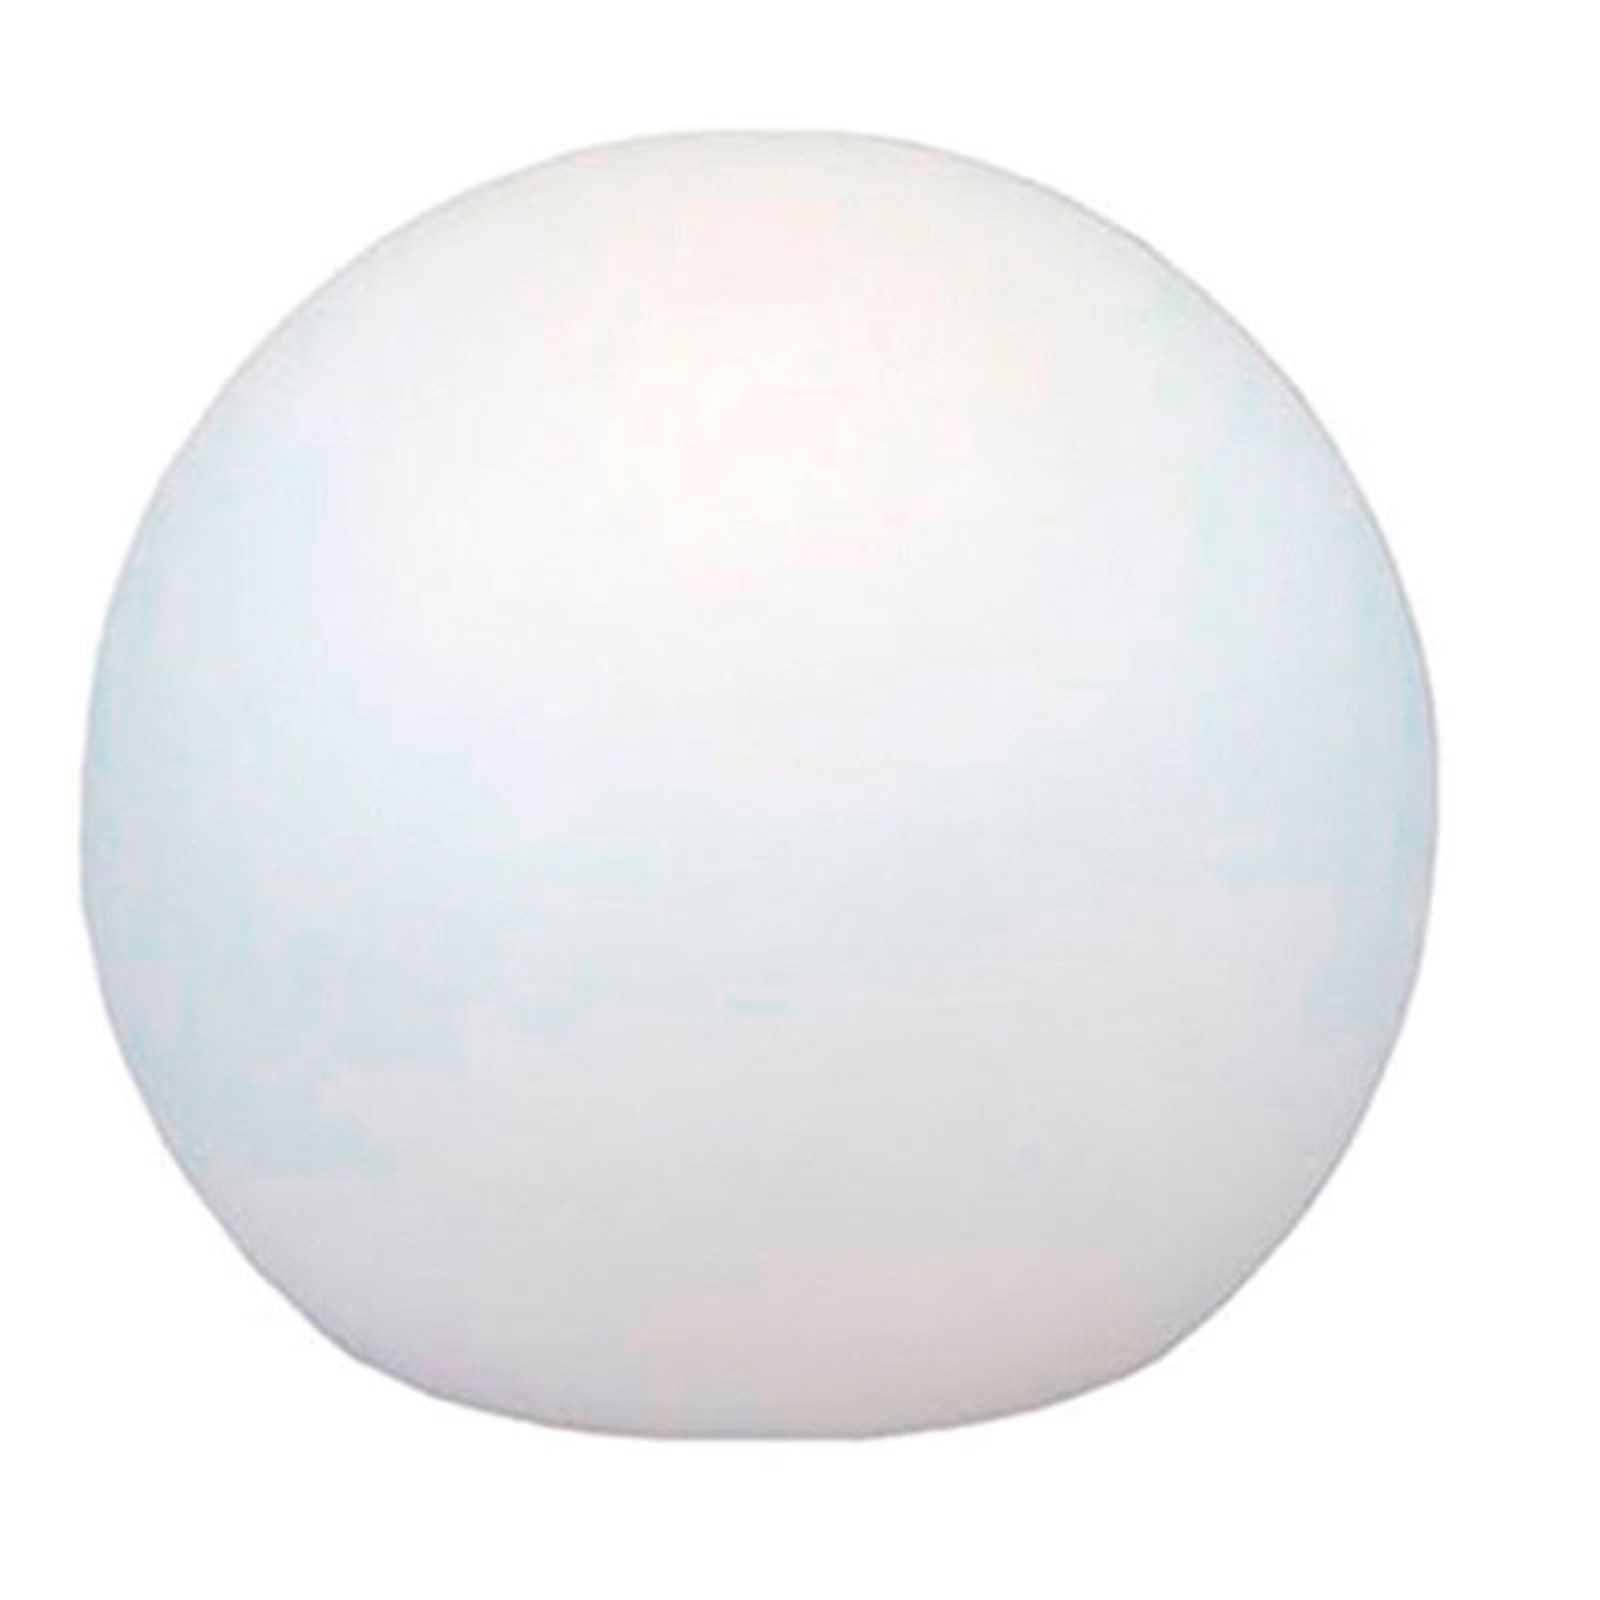 Newgarden Buly vloerlamp globe, Ø 80 cm